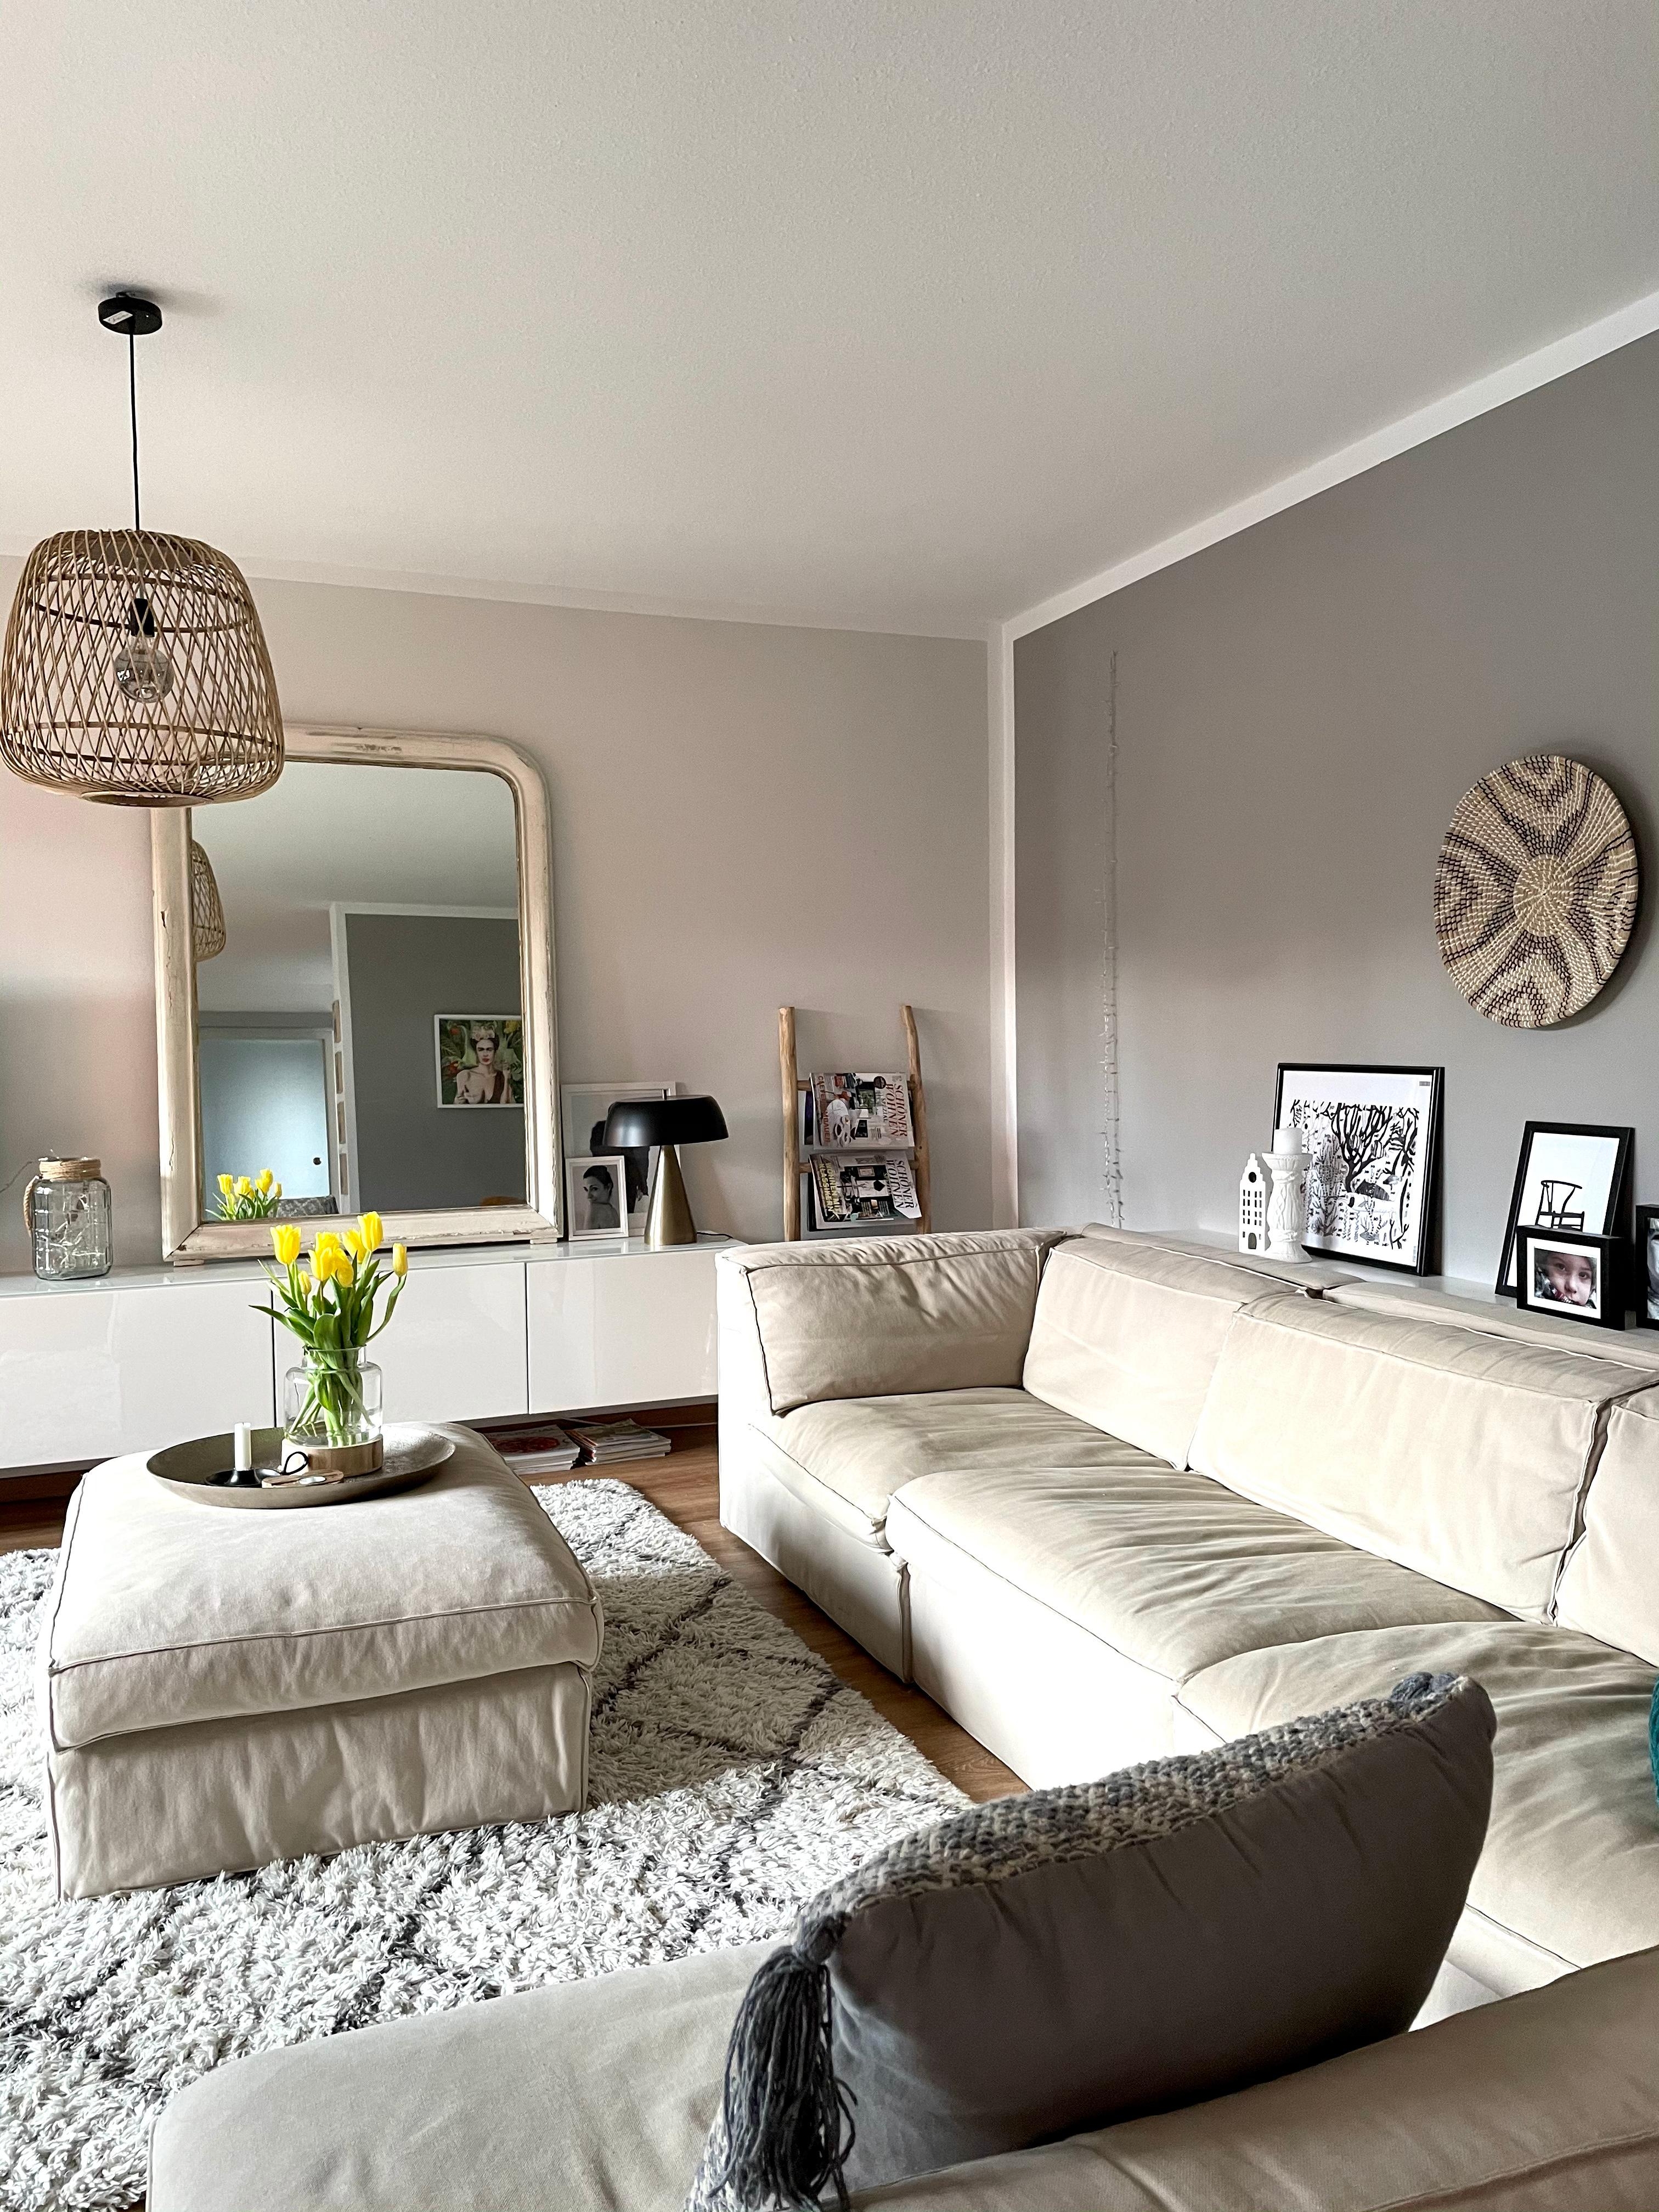 Schnelle Veränderung durch Bilder, Farben oder Accessoires #wohnzimmer #interior #living 